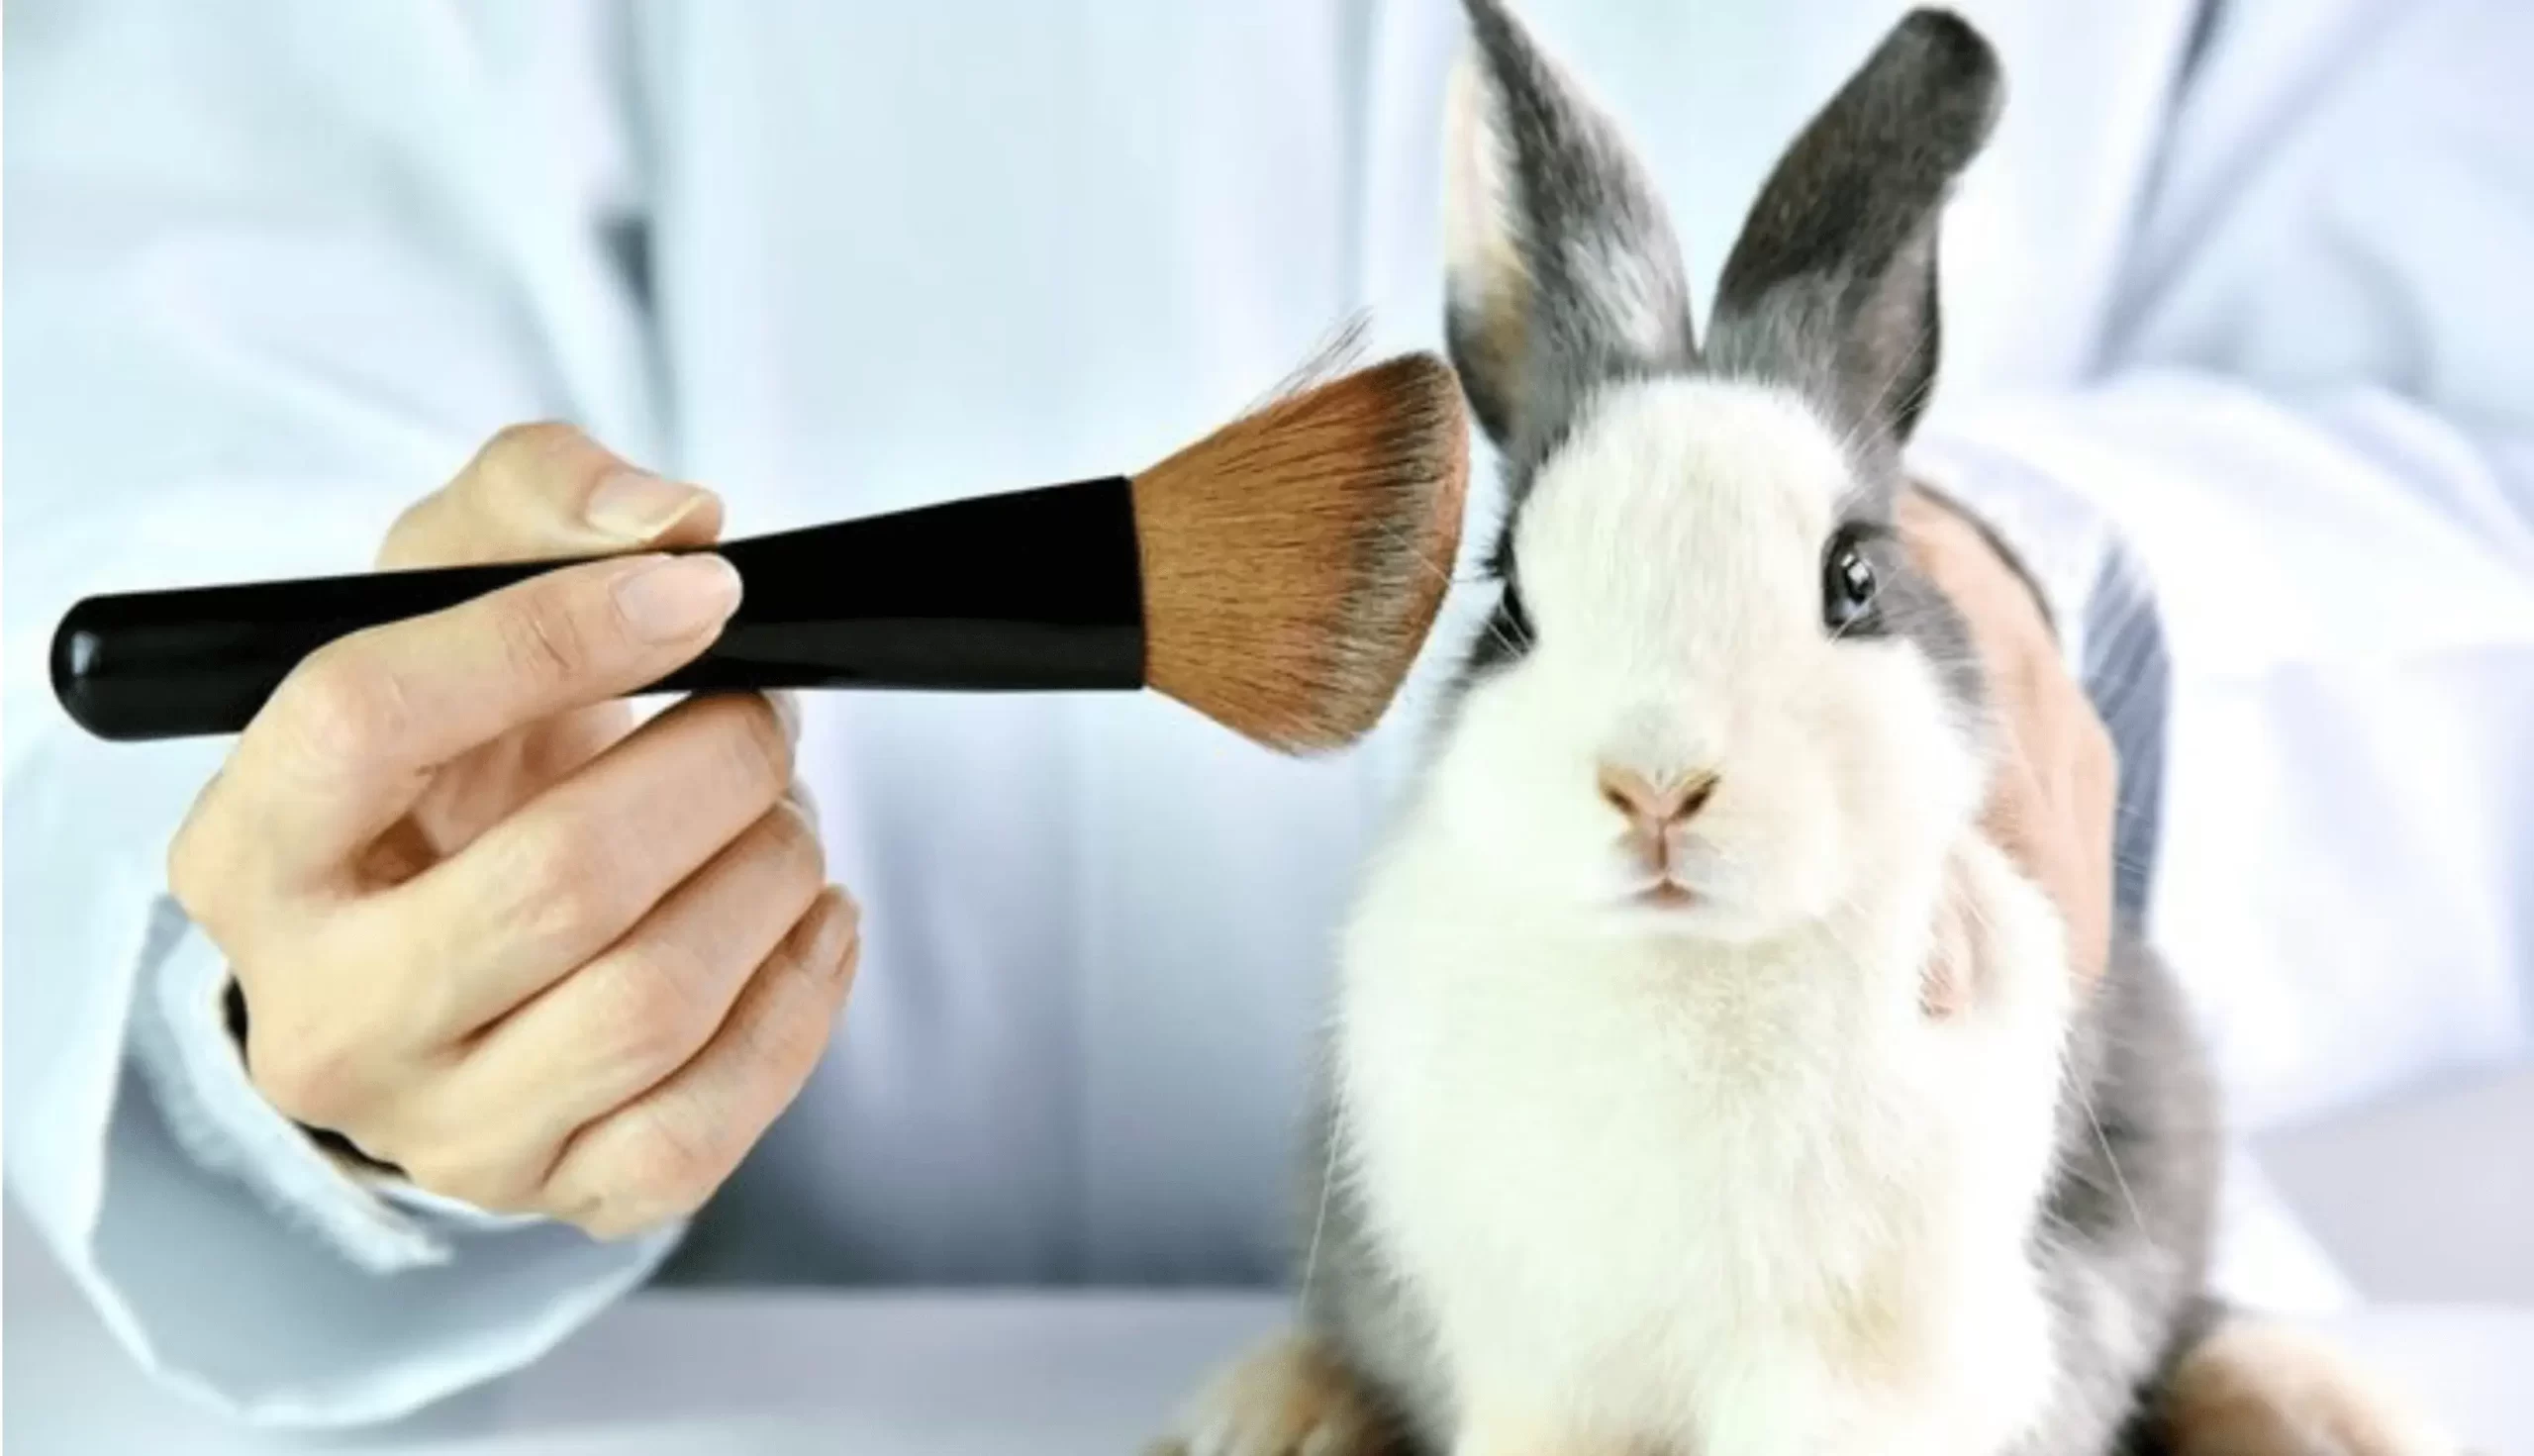 کرولتی فری و تست حیوانی محصولات آرایشی به چه معناست؟